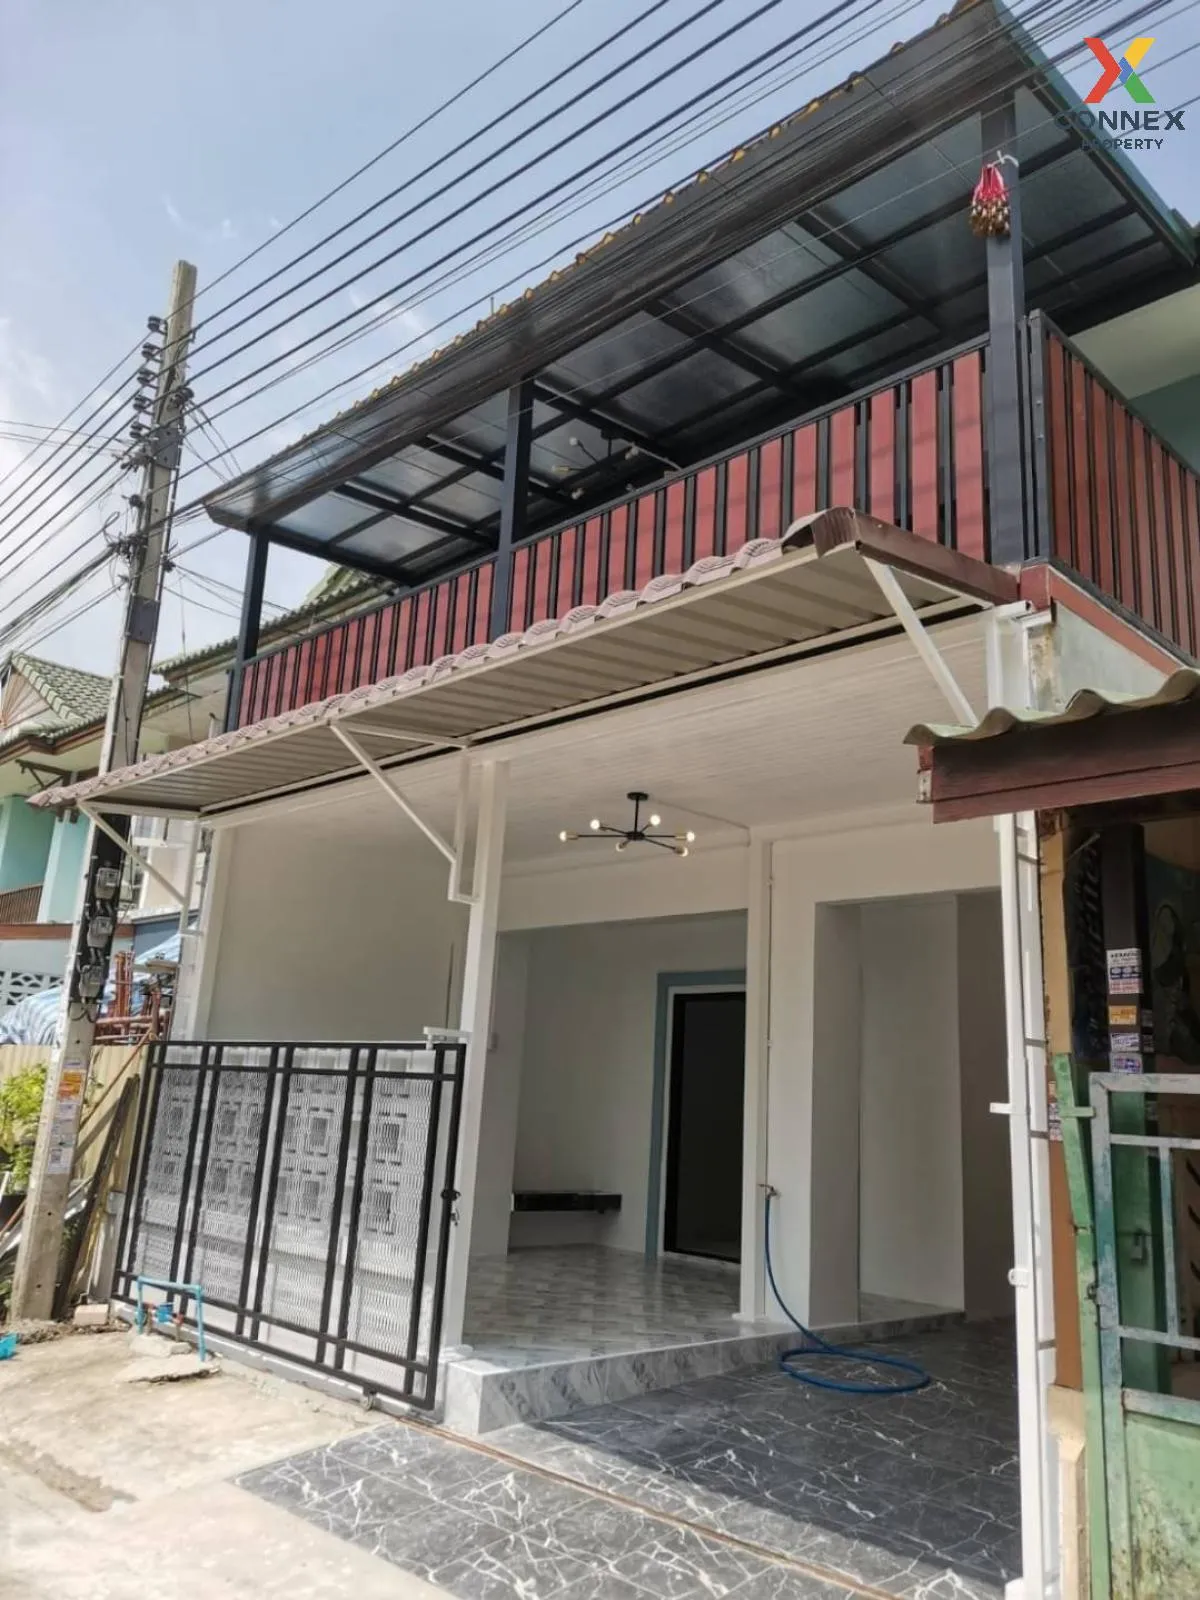 For Sale Townhouse/Townhome  , Baan Pruksa 10 Bang Kruai - Sai Noi , newly renovated , Sai Noi , Sai Noi , Nonthaburi , CX-96766